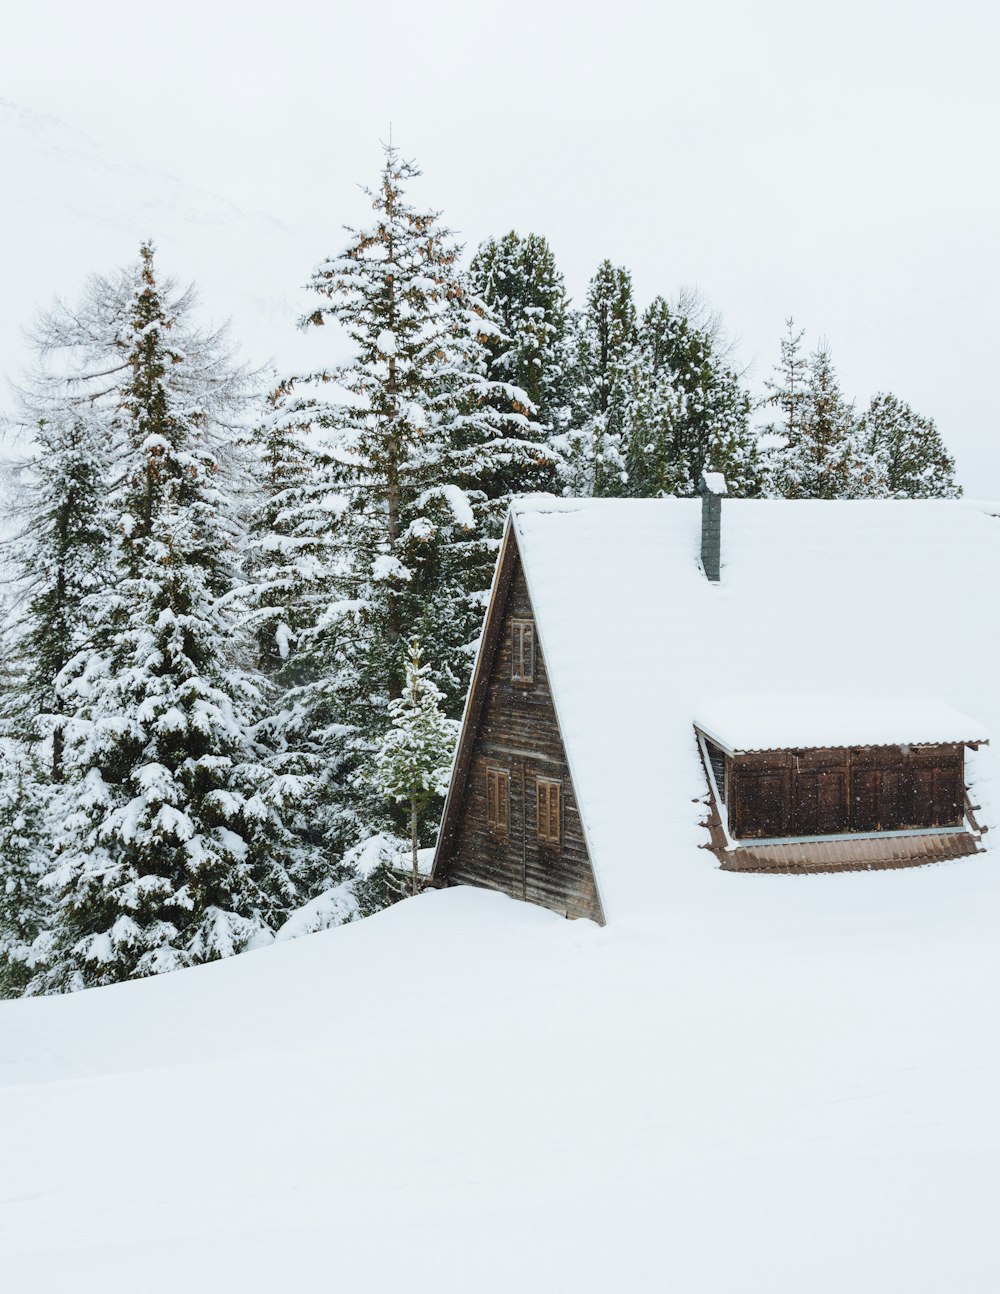 昼間は木々の脇に雪が積もった茶色の小屋